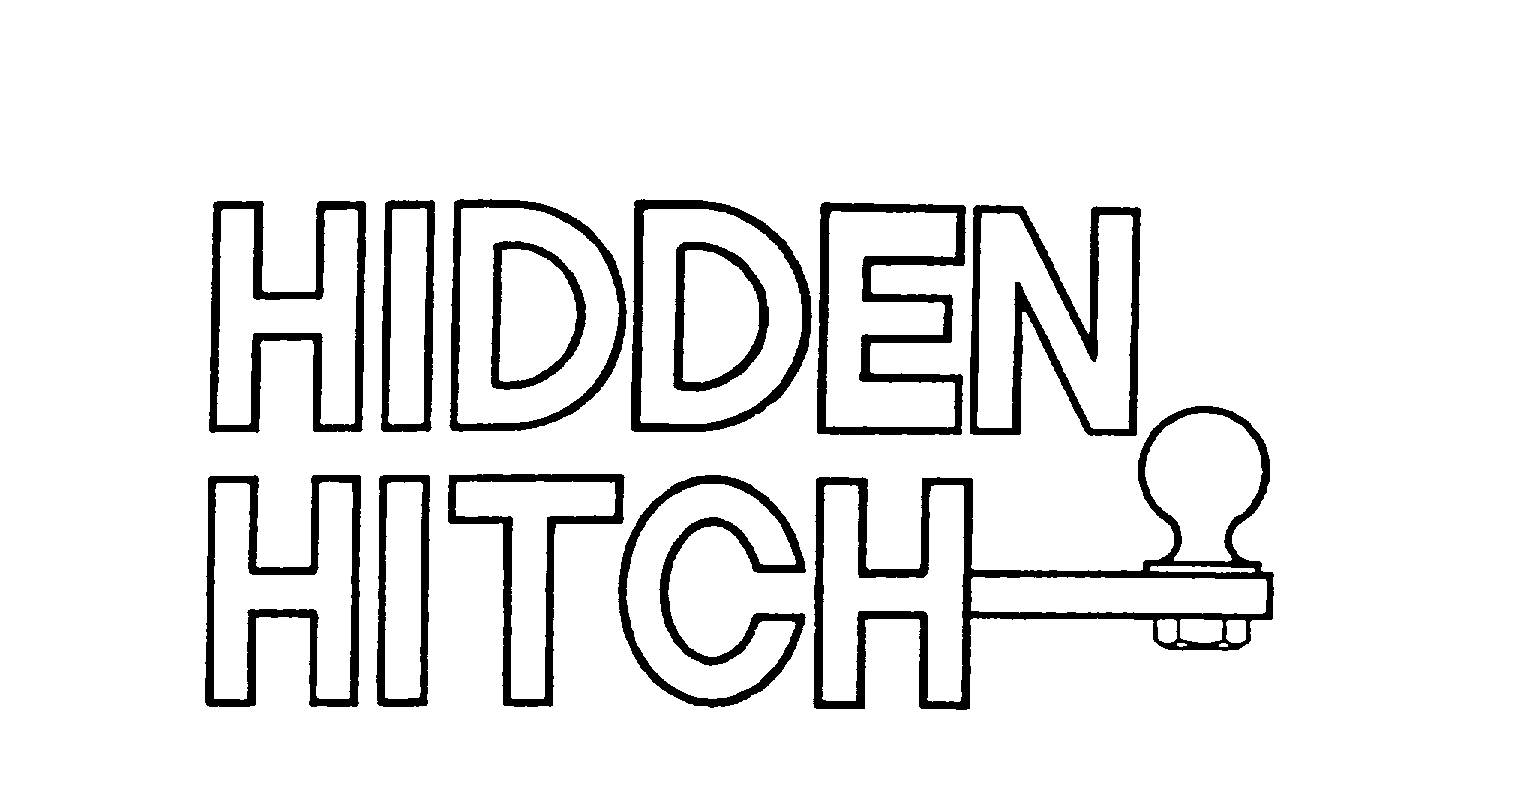 Trademark Logo HIDDEN HITCH